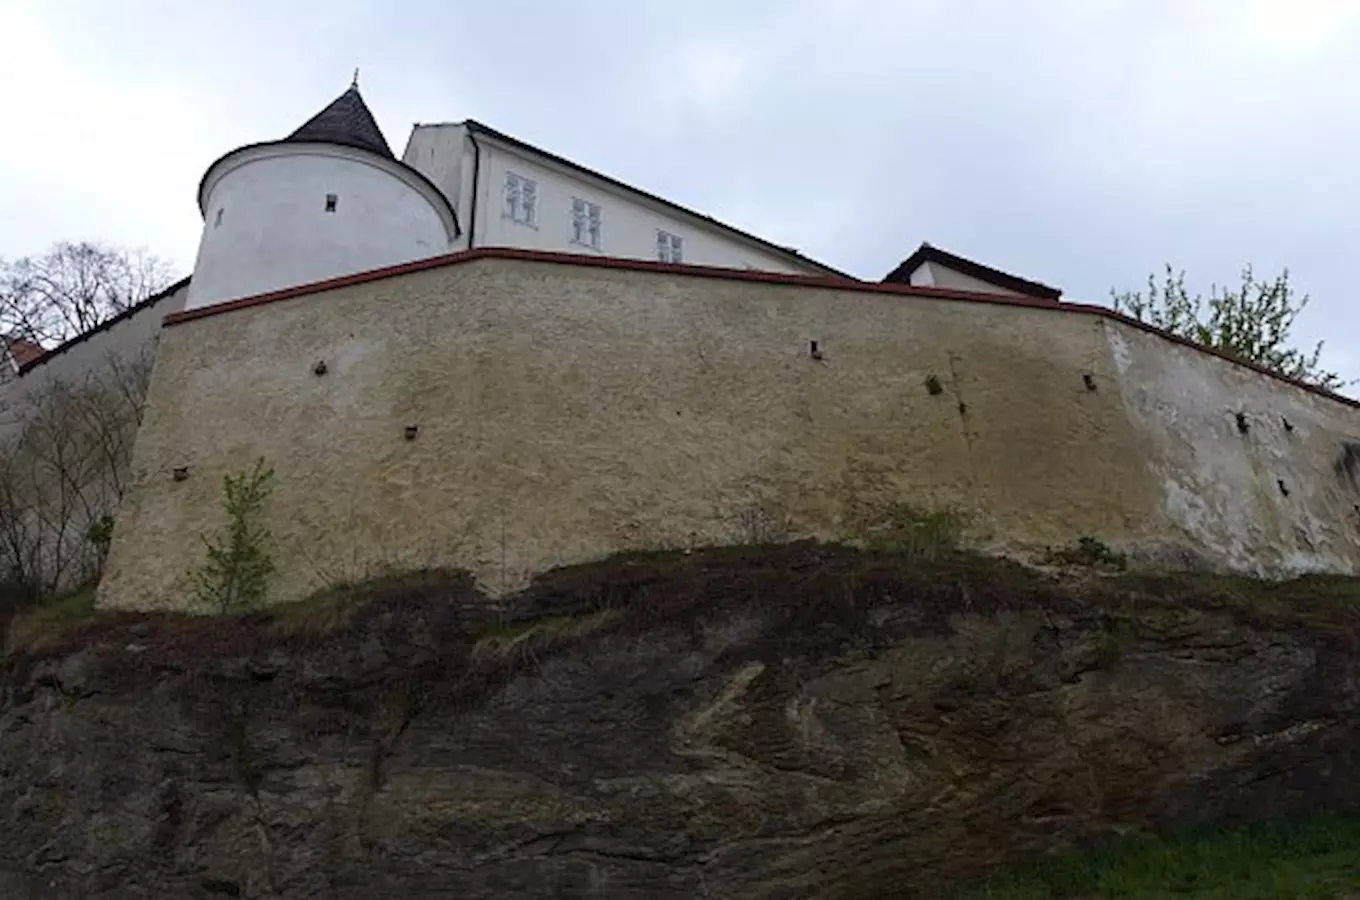 Pararulová vrása – vzácný geologický útvar v Moravských Budějovicích